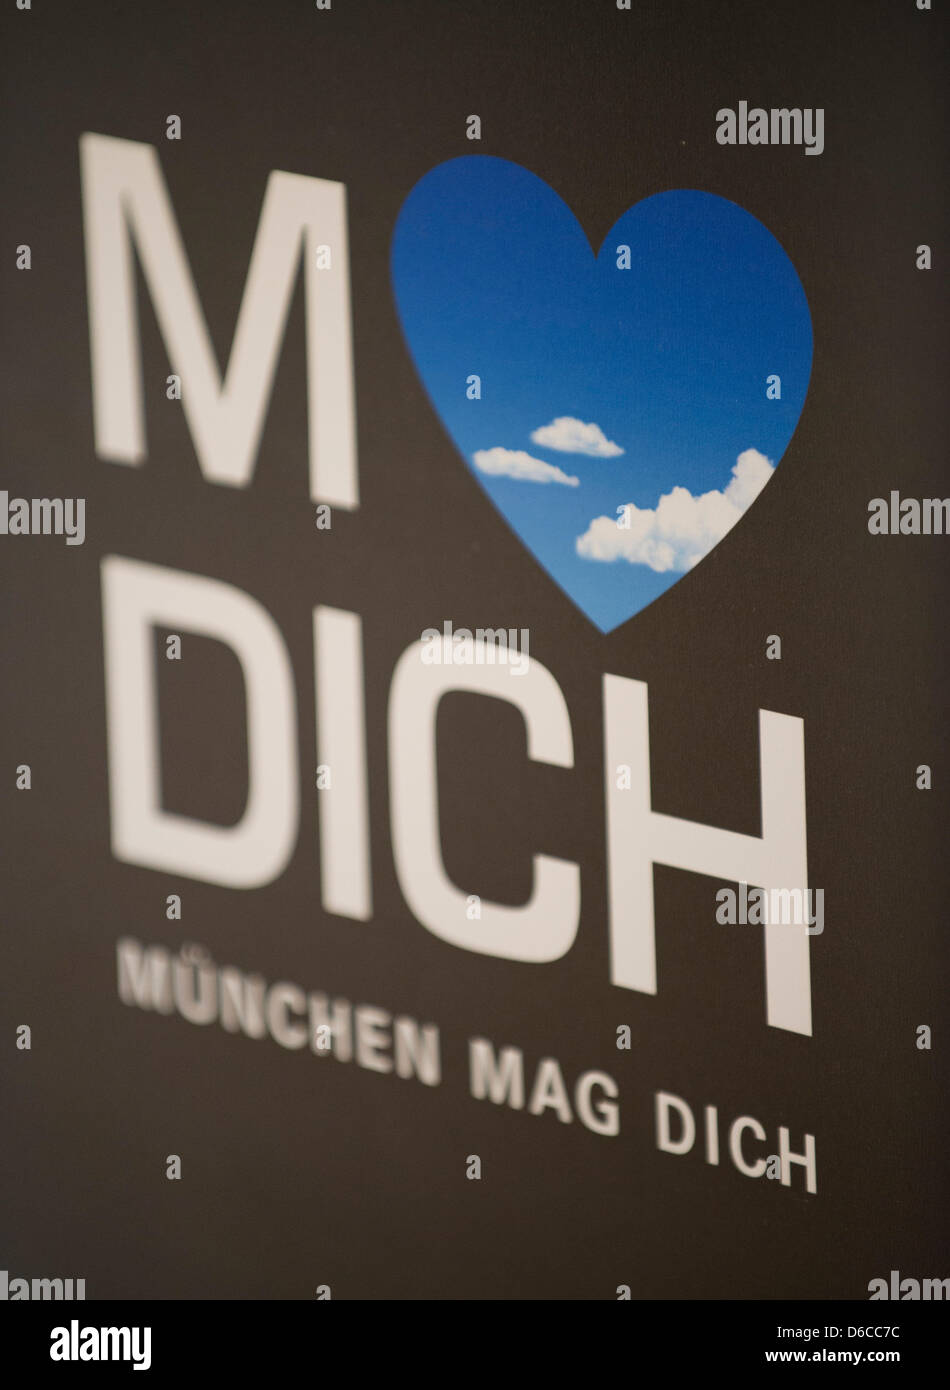 Un poster lettura 'M liebt Dich" per 'Munich vi ama' è raffigurato in Monaco di Baviera, Germania, 04 aprile 2013. Foto: Inga Kjer Foto Stock